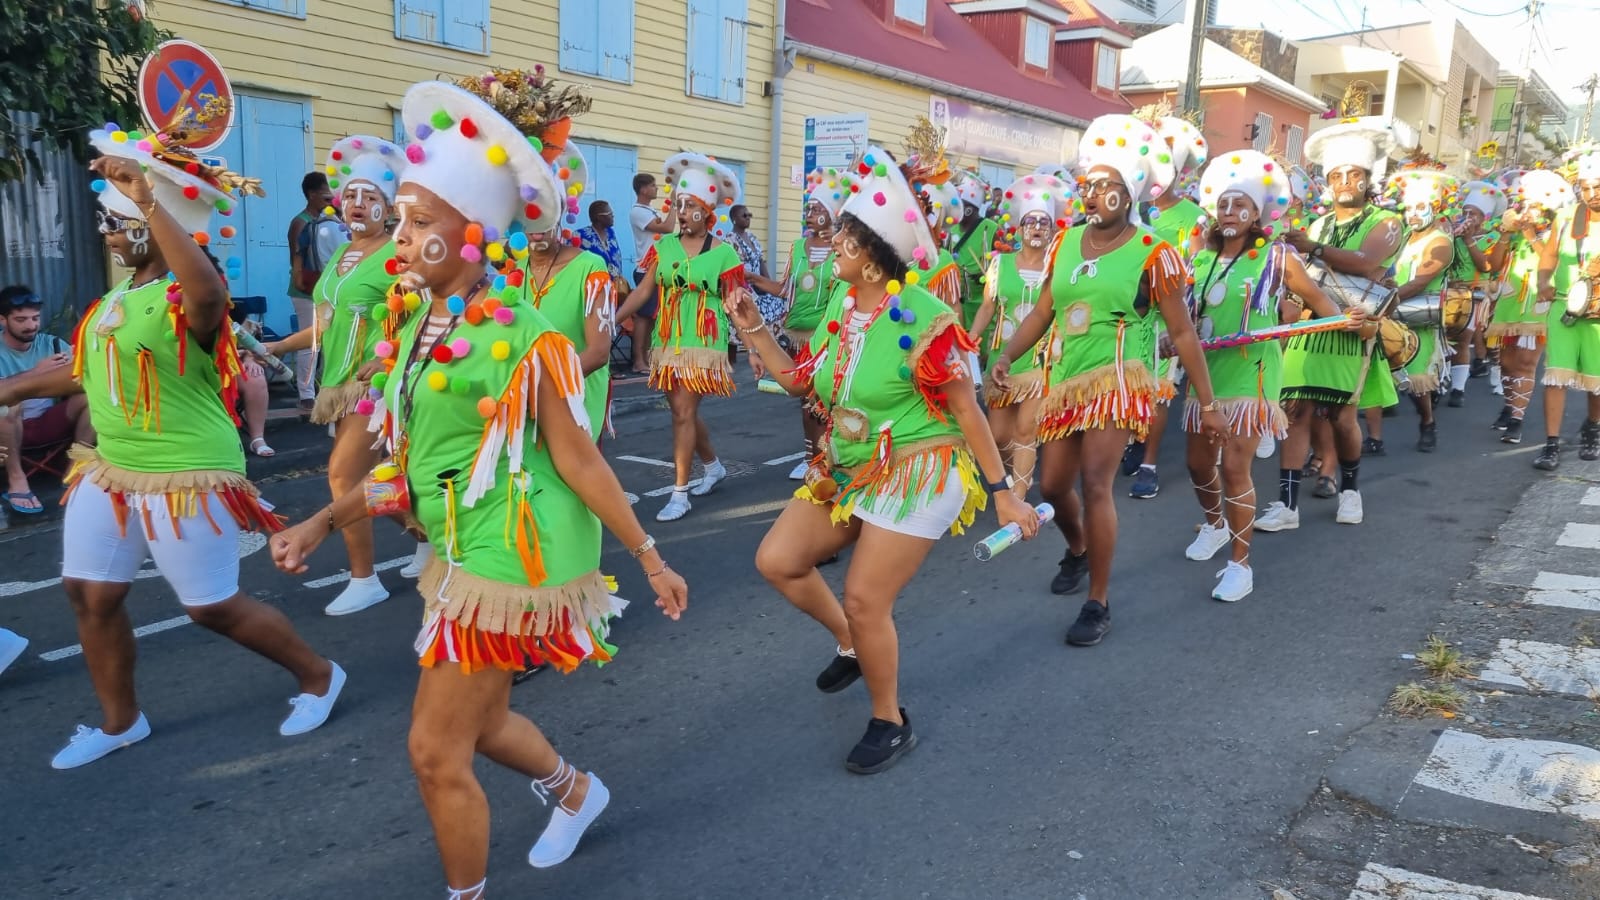     Carnaval : les rendez-vous du week-end en Guadeloupe

